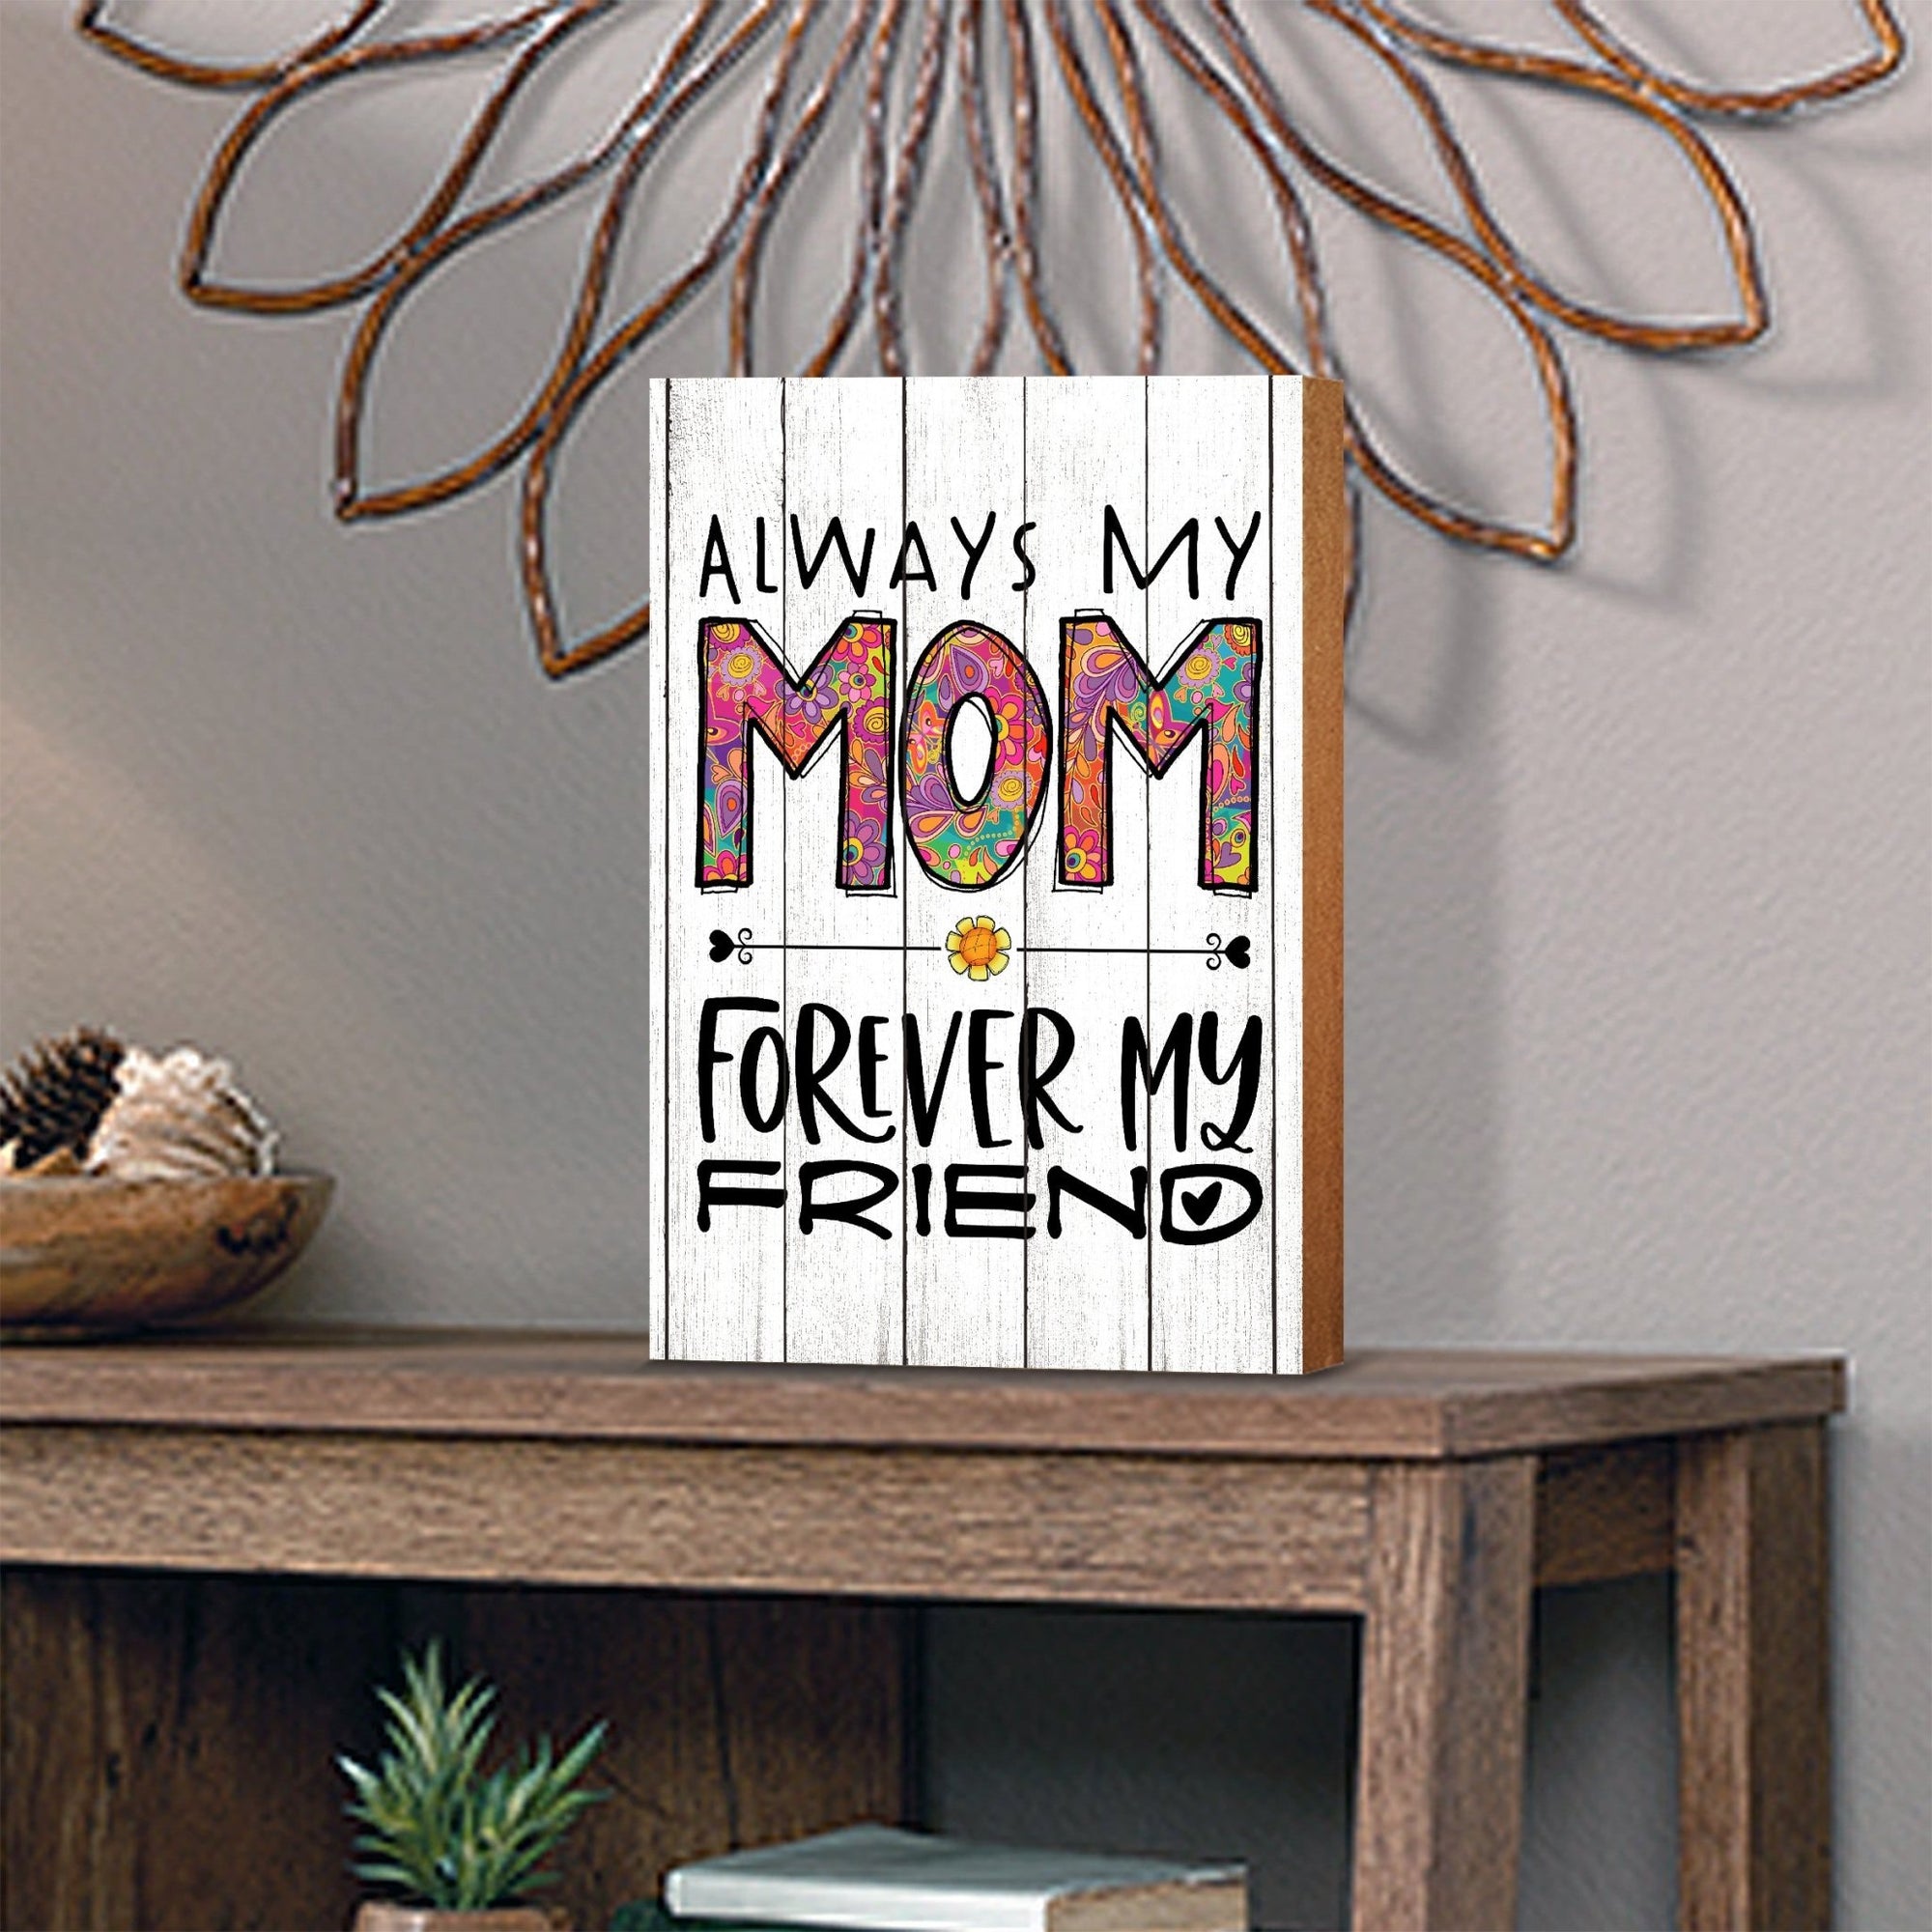 Modern-Inspired White Wooden Graffiti Art Shelf Sitter Gift Idea & Home Décor - Always My Mom - LifeSong Milestones